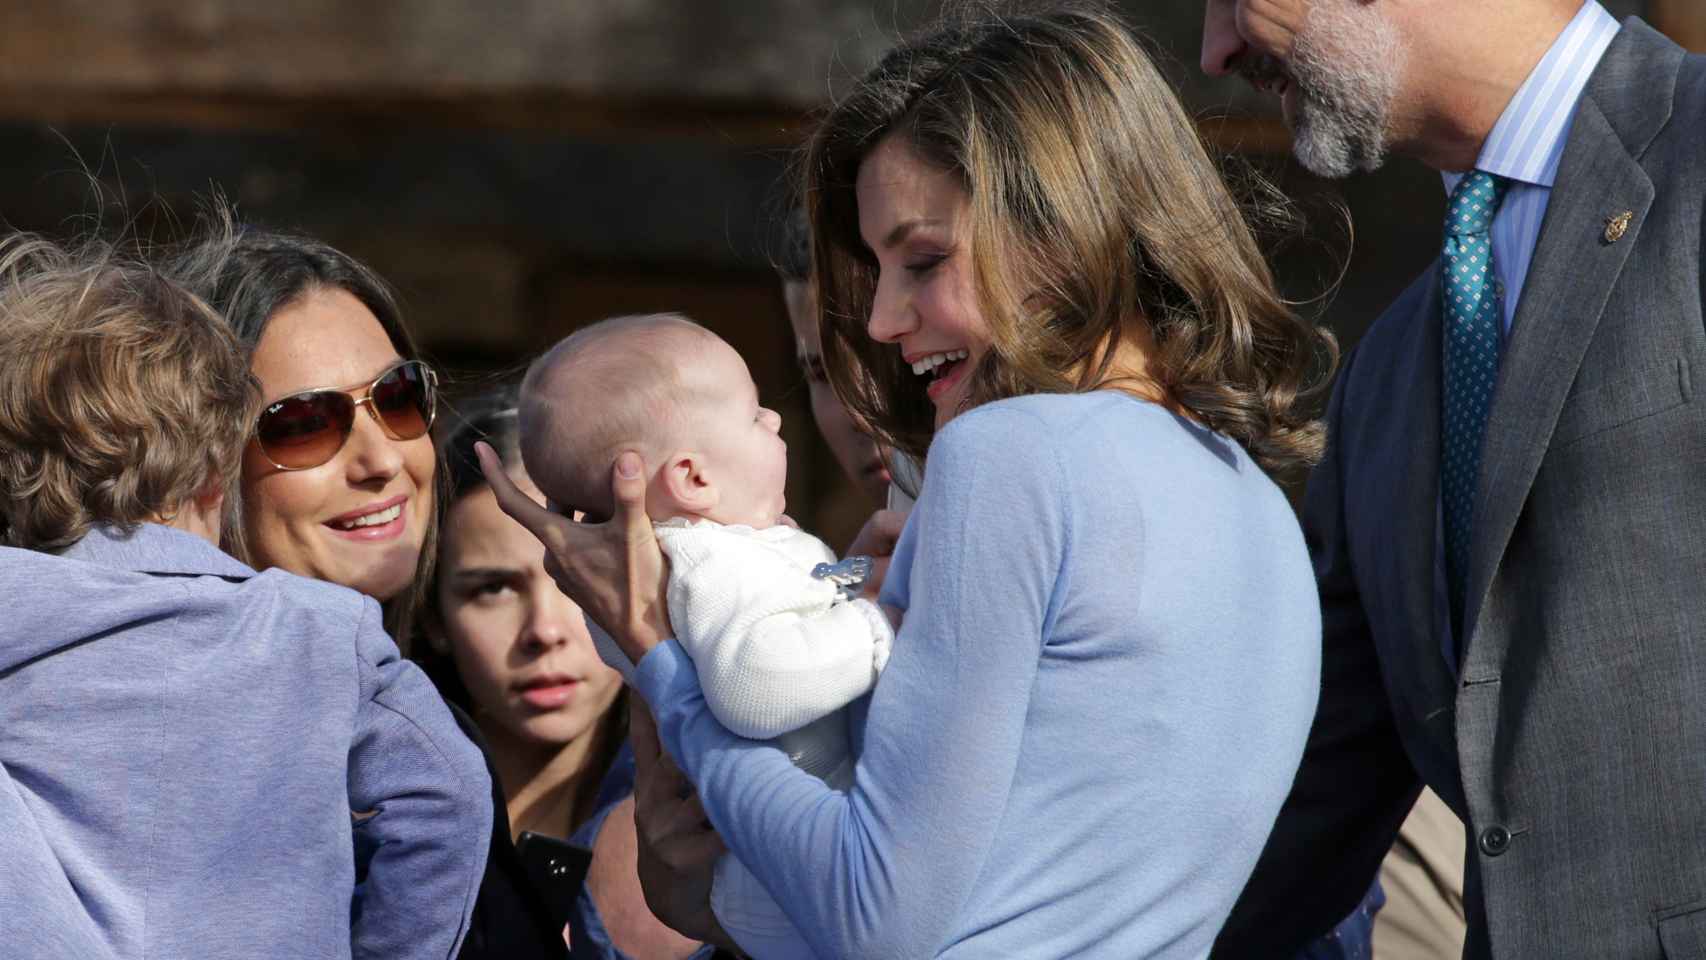 La reina Letizia con un bebé del público en brazos.